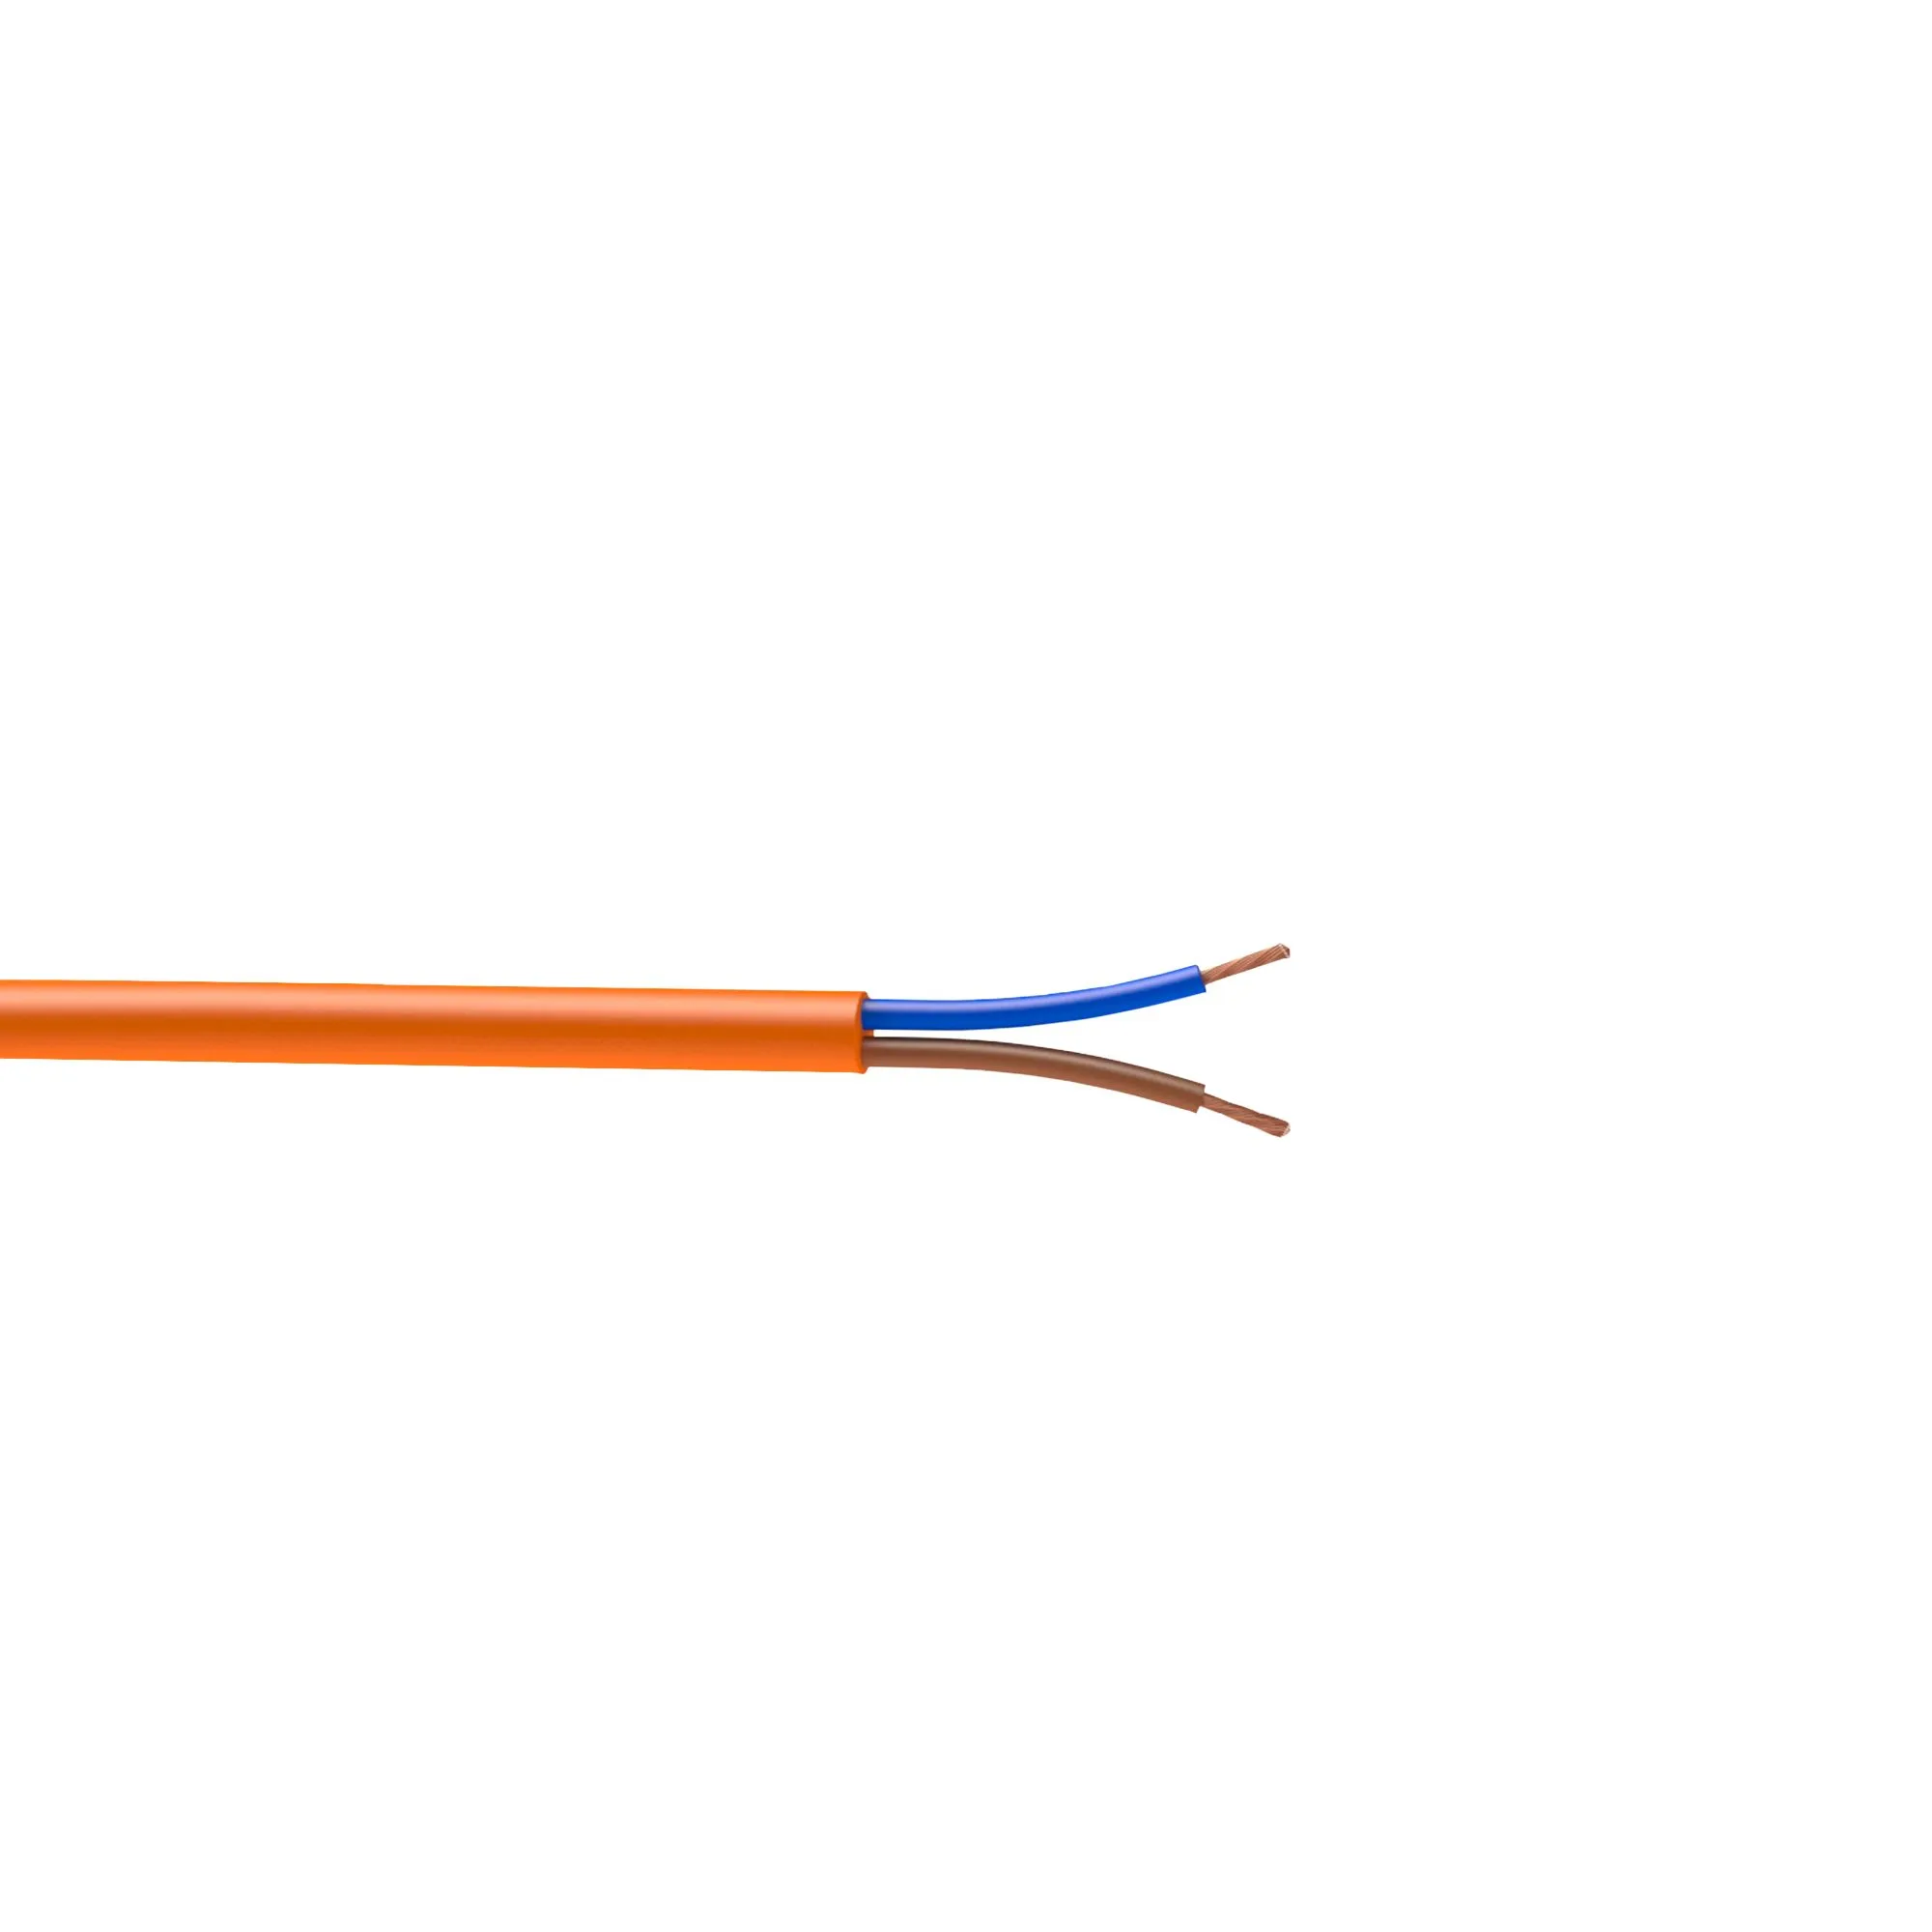 Nexans Orange Multi-core cable 1mm² x 10m